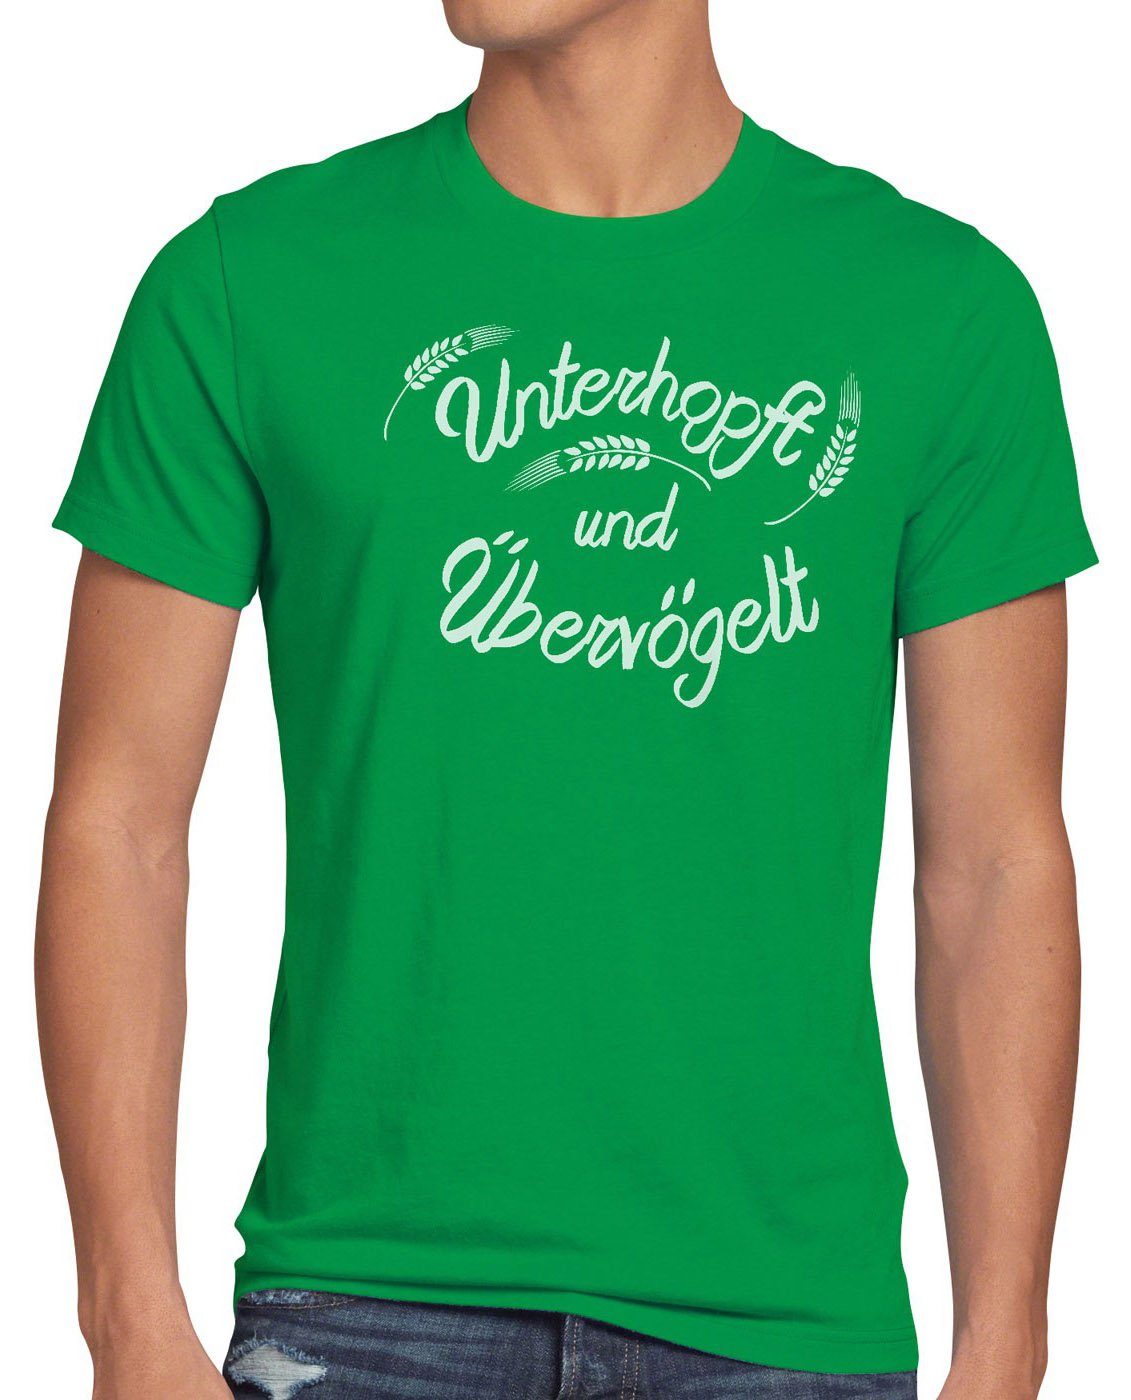 style3 Print-Shirt Herren T-Shirt Unterhopft Übervögelt Kult Shirt Funshirt Spruch Bier Malz Fun grün